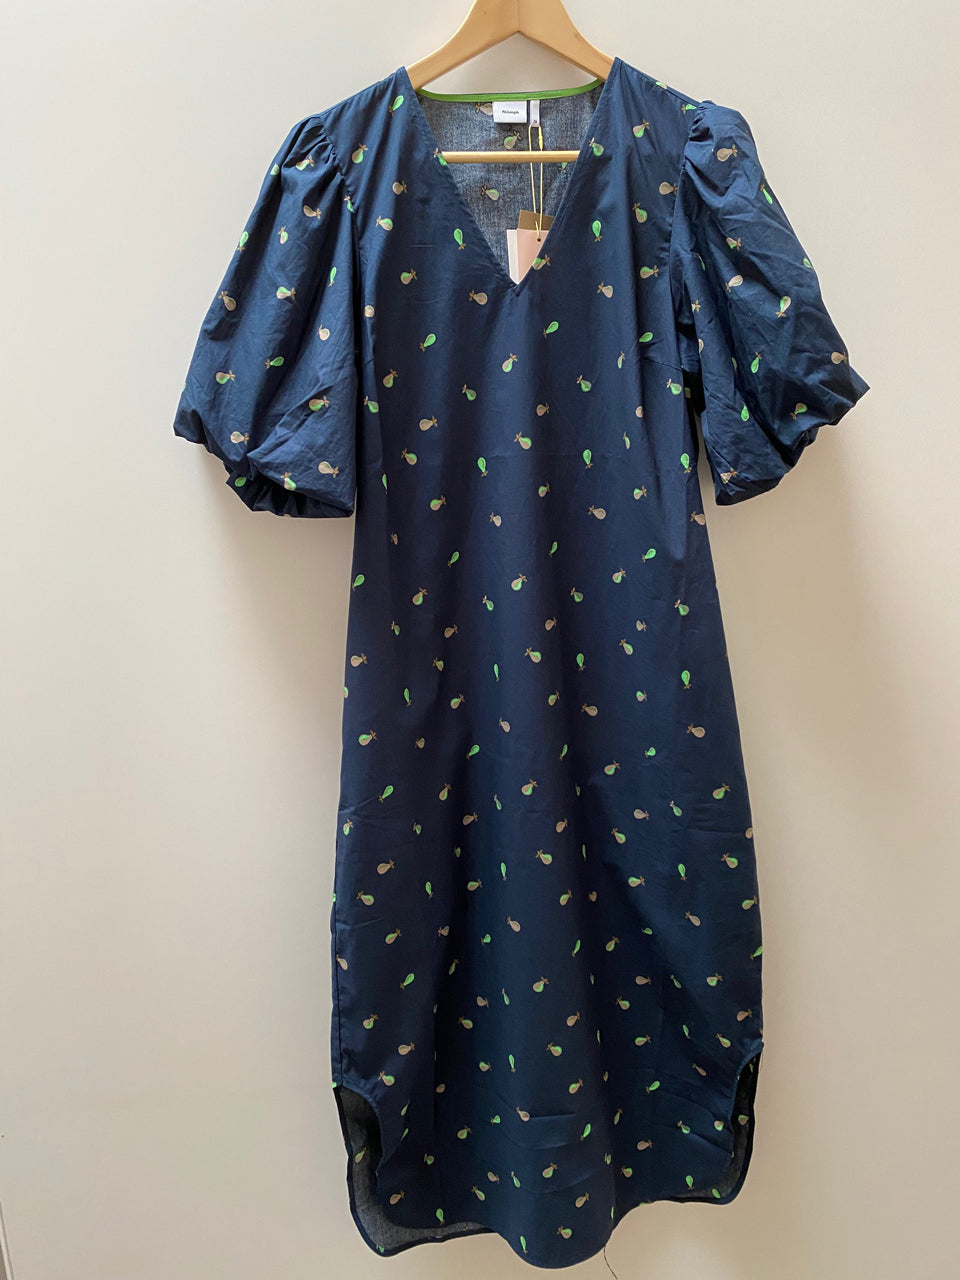 Dunkelblaues Kleid mit Birnenprint von Nümph, erhältlich bei 17 und wir.